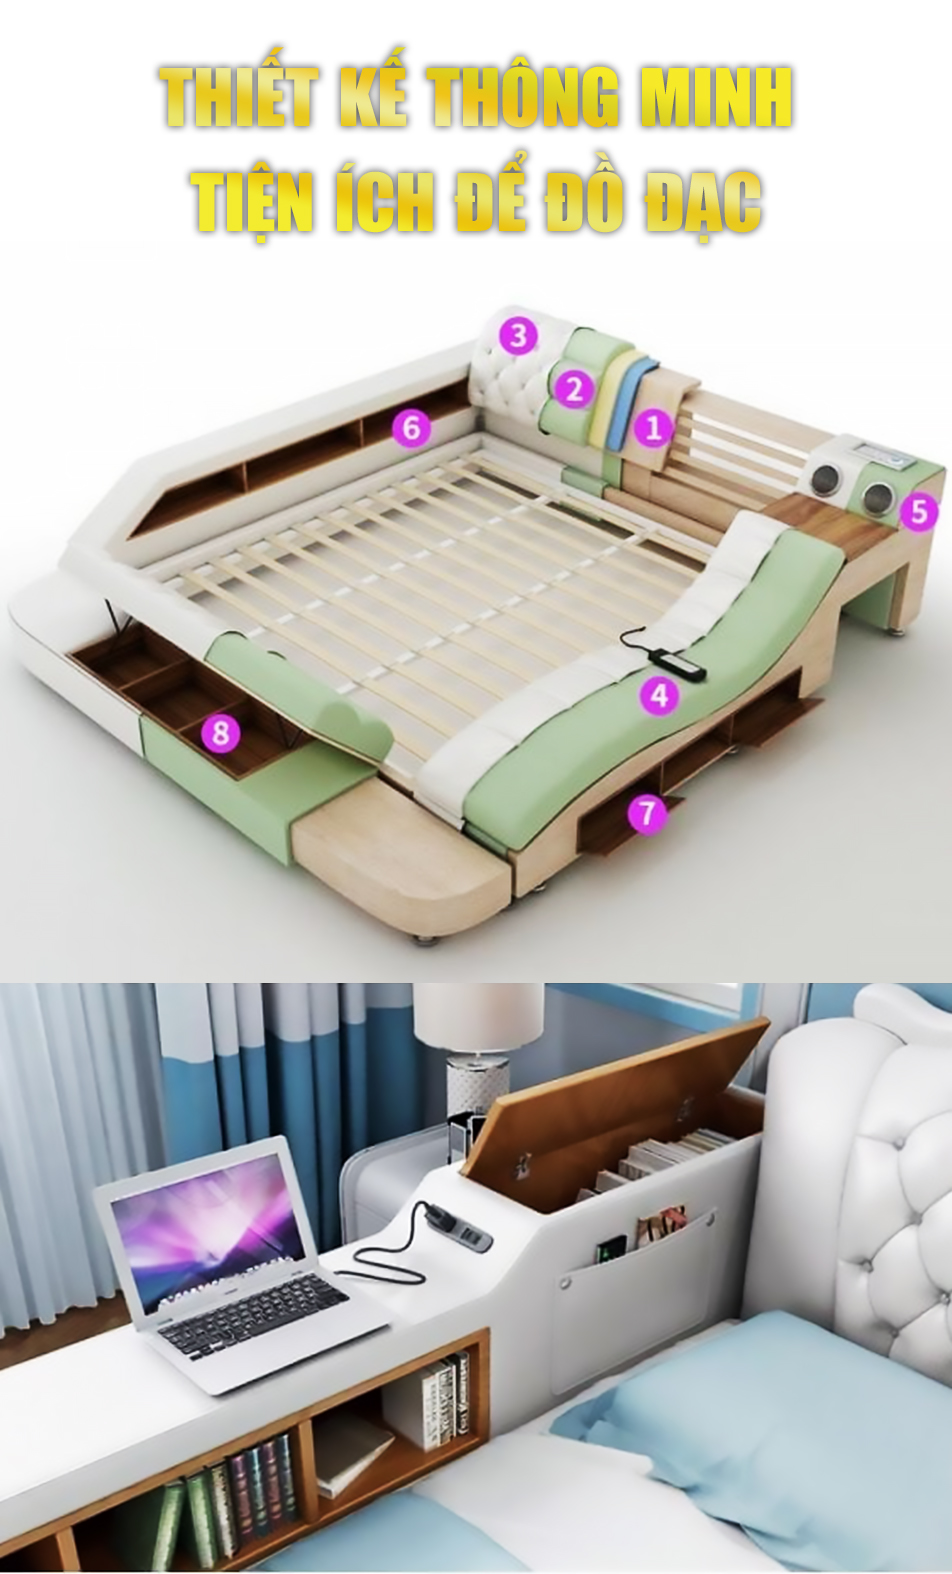 giường massage haruko với tiện ích để đồ đạc thông minh